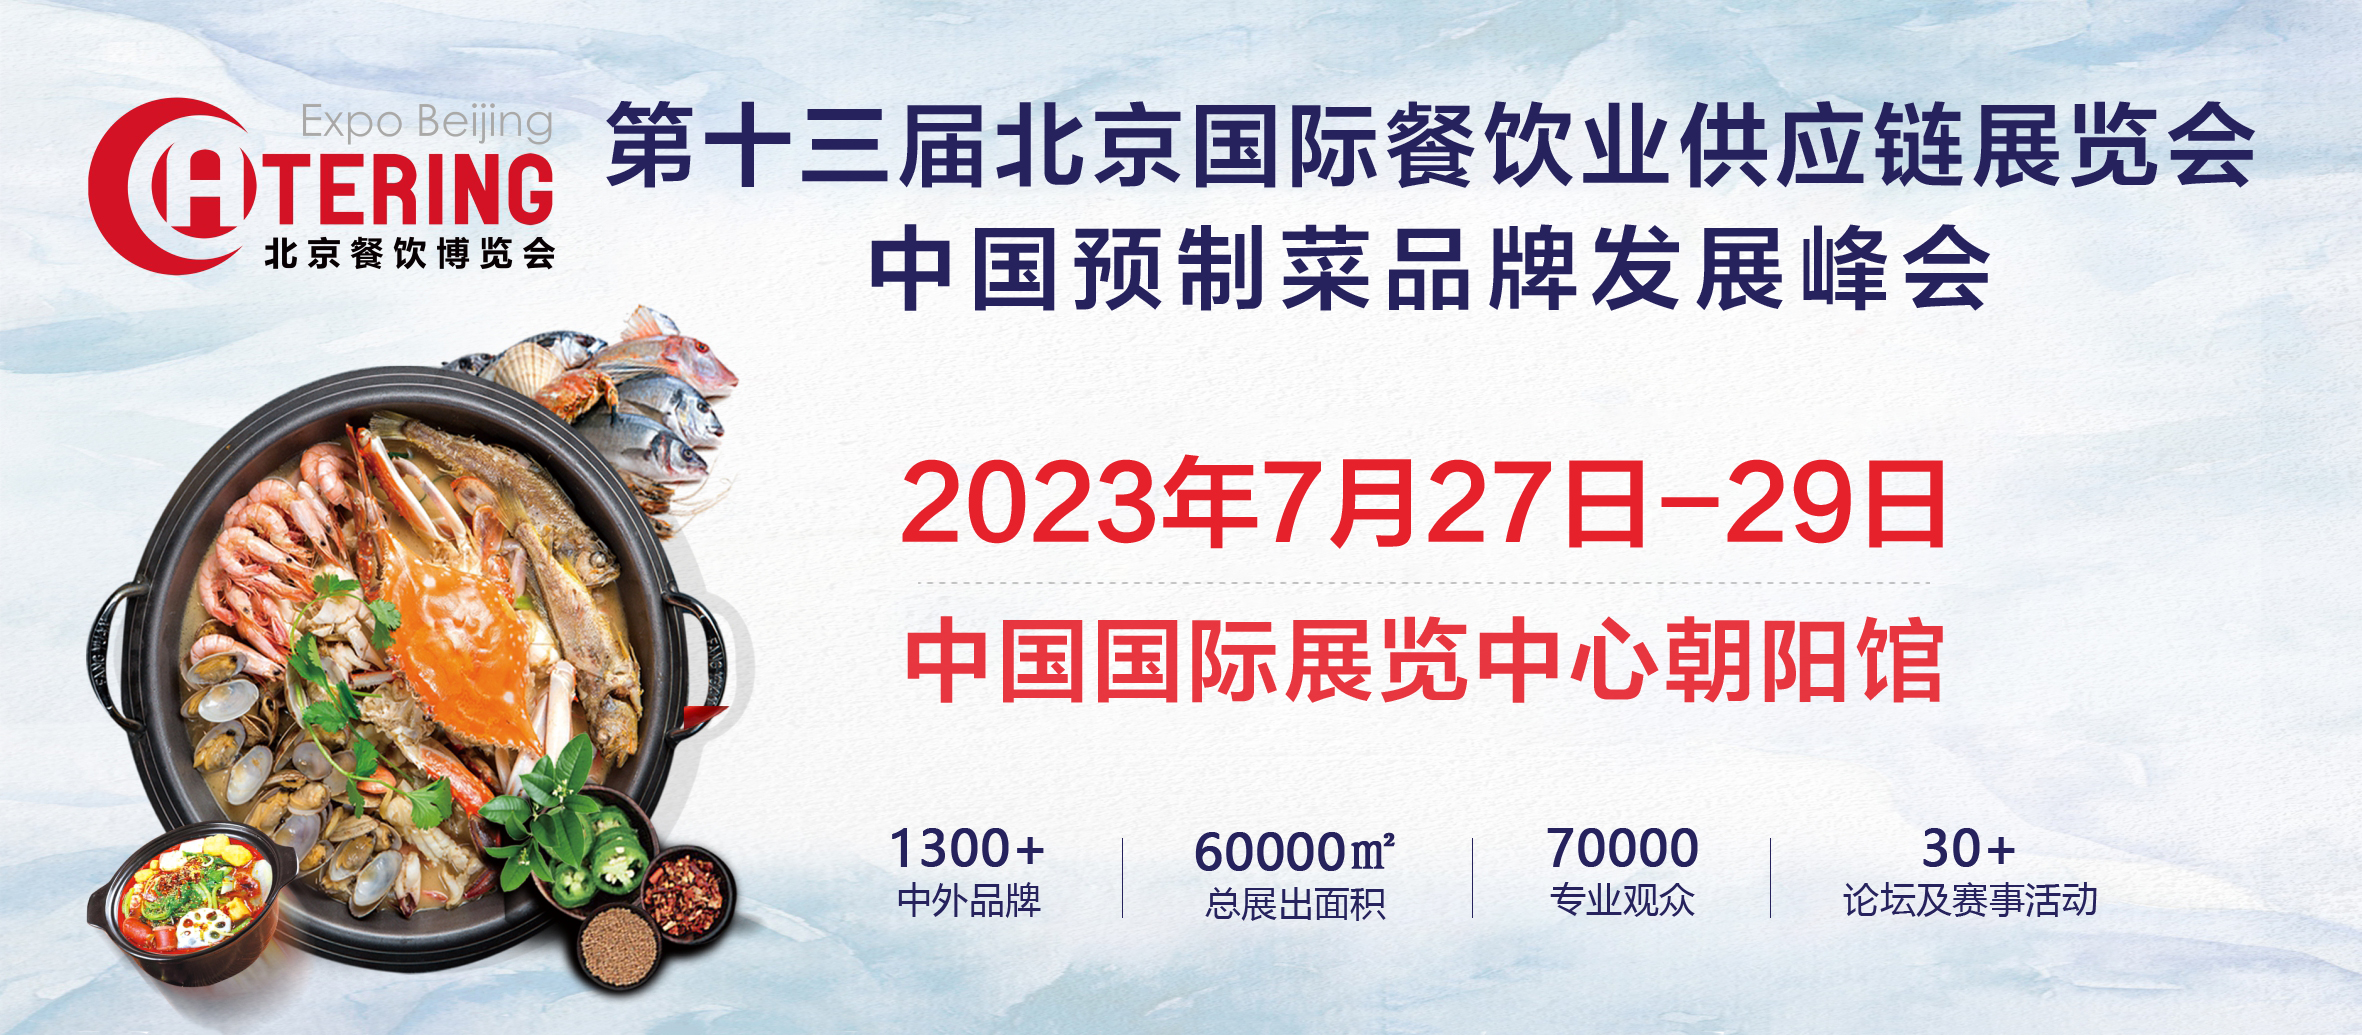 展商推介 | 辽宁汤品嘉将携最新产品亮相2023北京餐博会(图1)